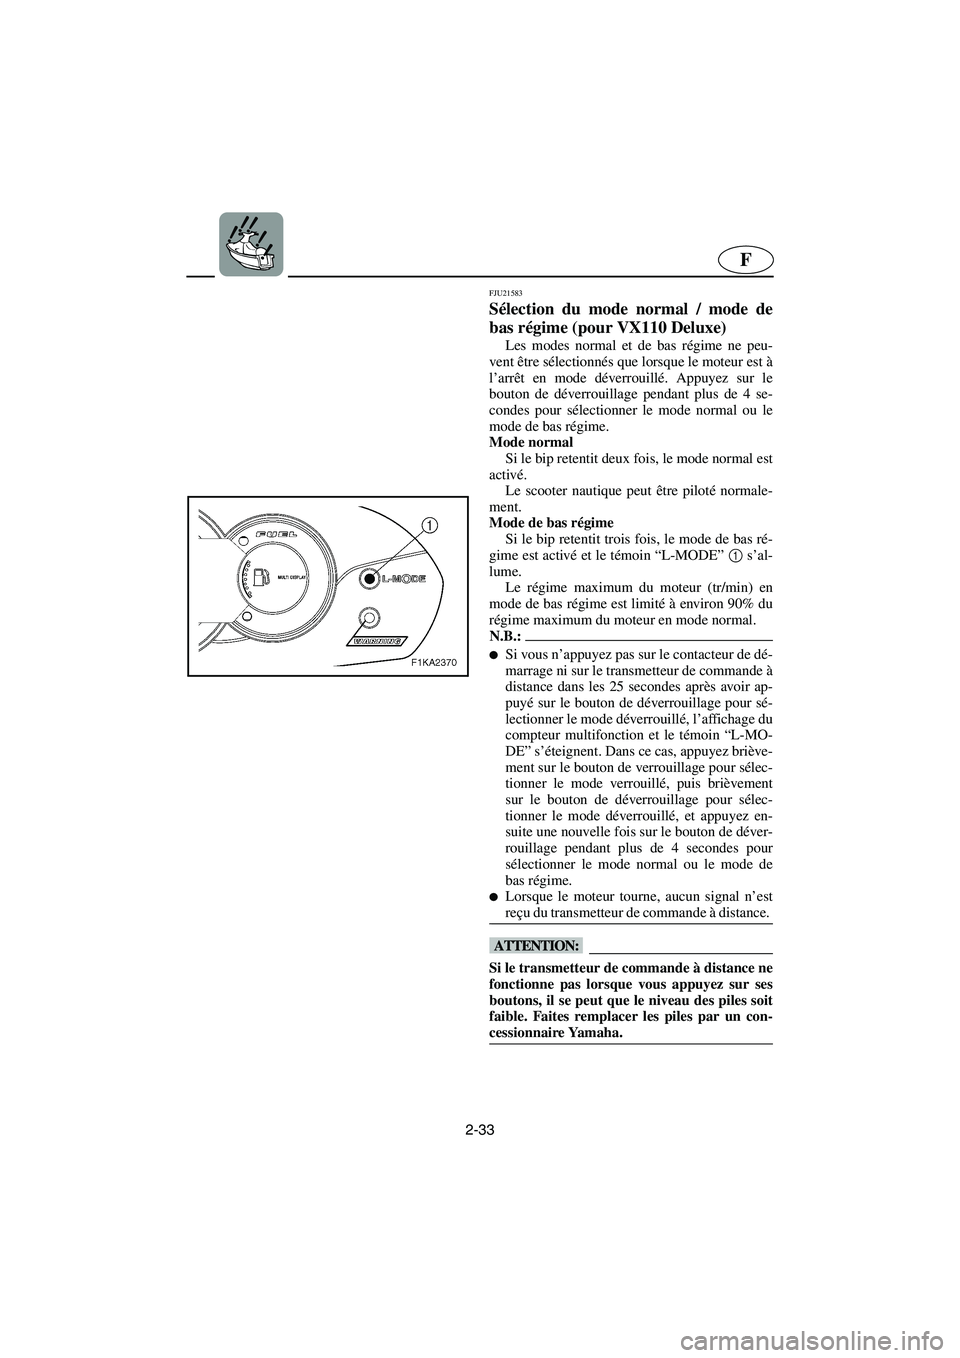 YAMAHA VX SPORT 2006  Manuale de Empleo (in Spanish) 2-33
F
FJU21583
Sélection du mode normal / mode de
bas régime (pour VX110 Deluxe) 
Les modes normal et de bas régime ne peu-
vent être sélectionnés que lorsque le moteur est à
l’arrêt en mod